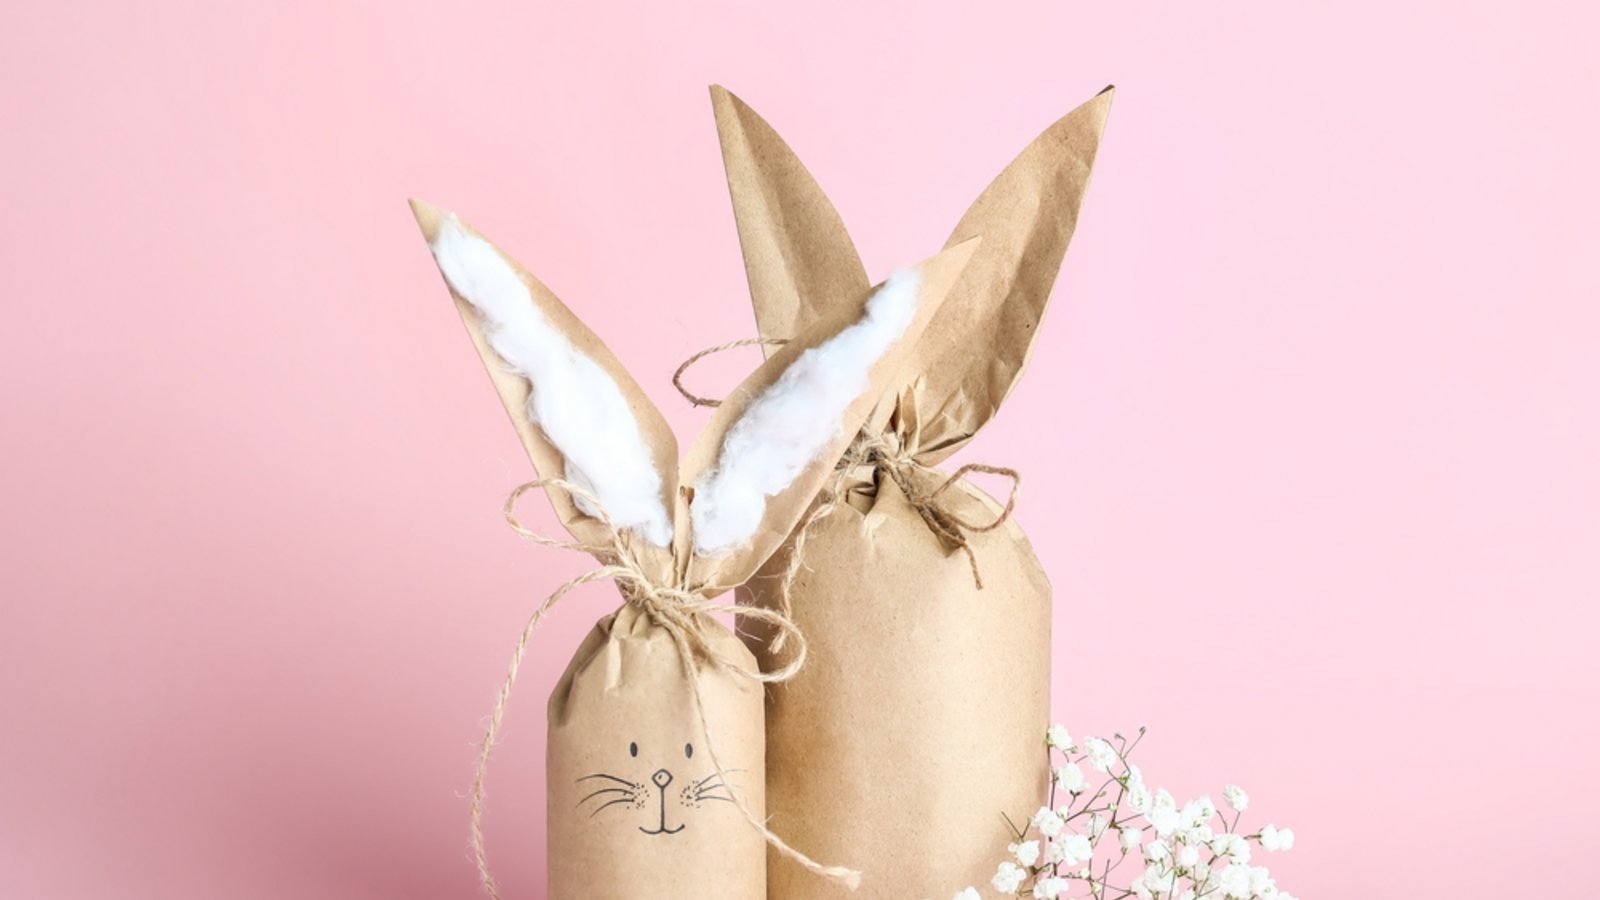 Erfahren Sie, wann an Ostern Geschenke verteilt werden und was sonst noch wichtig ist. (Alles zur Eiersuche im Überblick).Foto: Pixel-Shot / Shutterstock.com